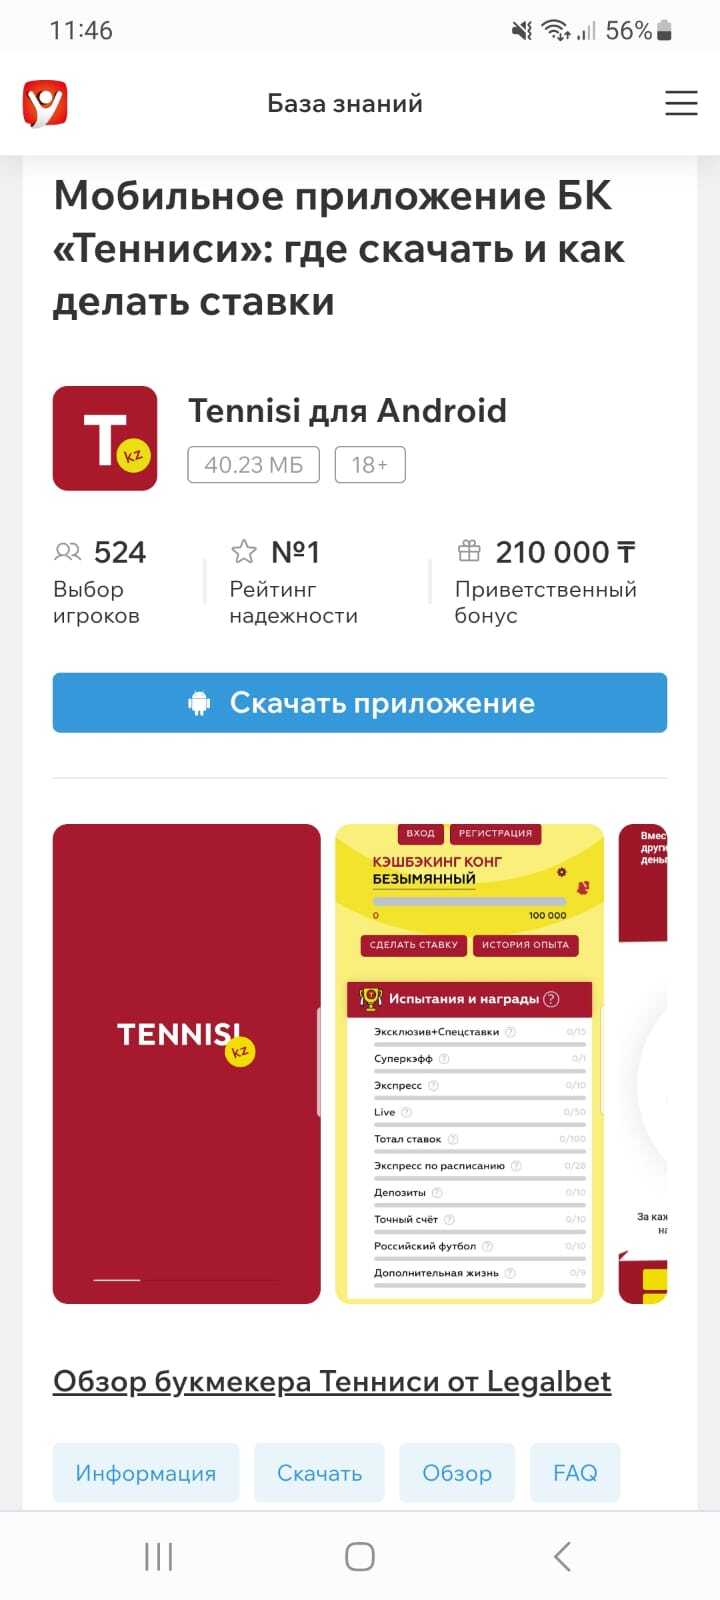 Кнопка «Скачать приложение» в обзоре мобильного приложения БК Тенниси на сайте Legalbet.kz